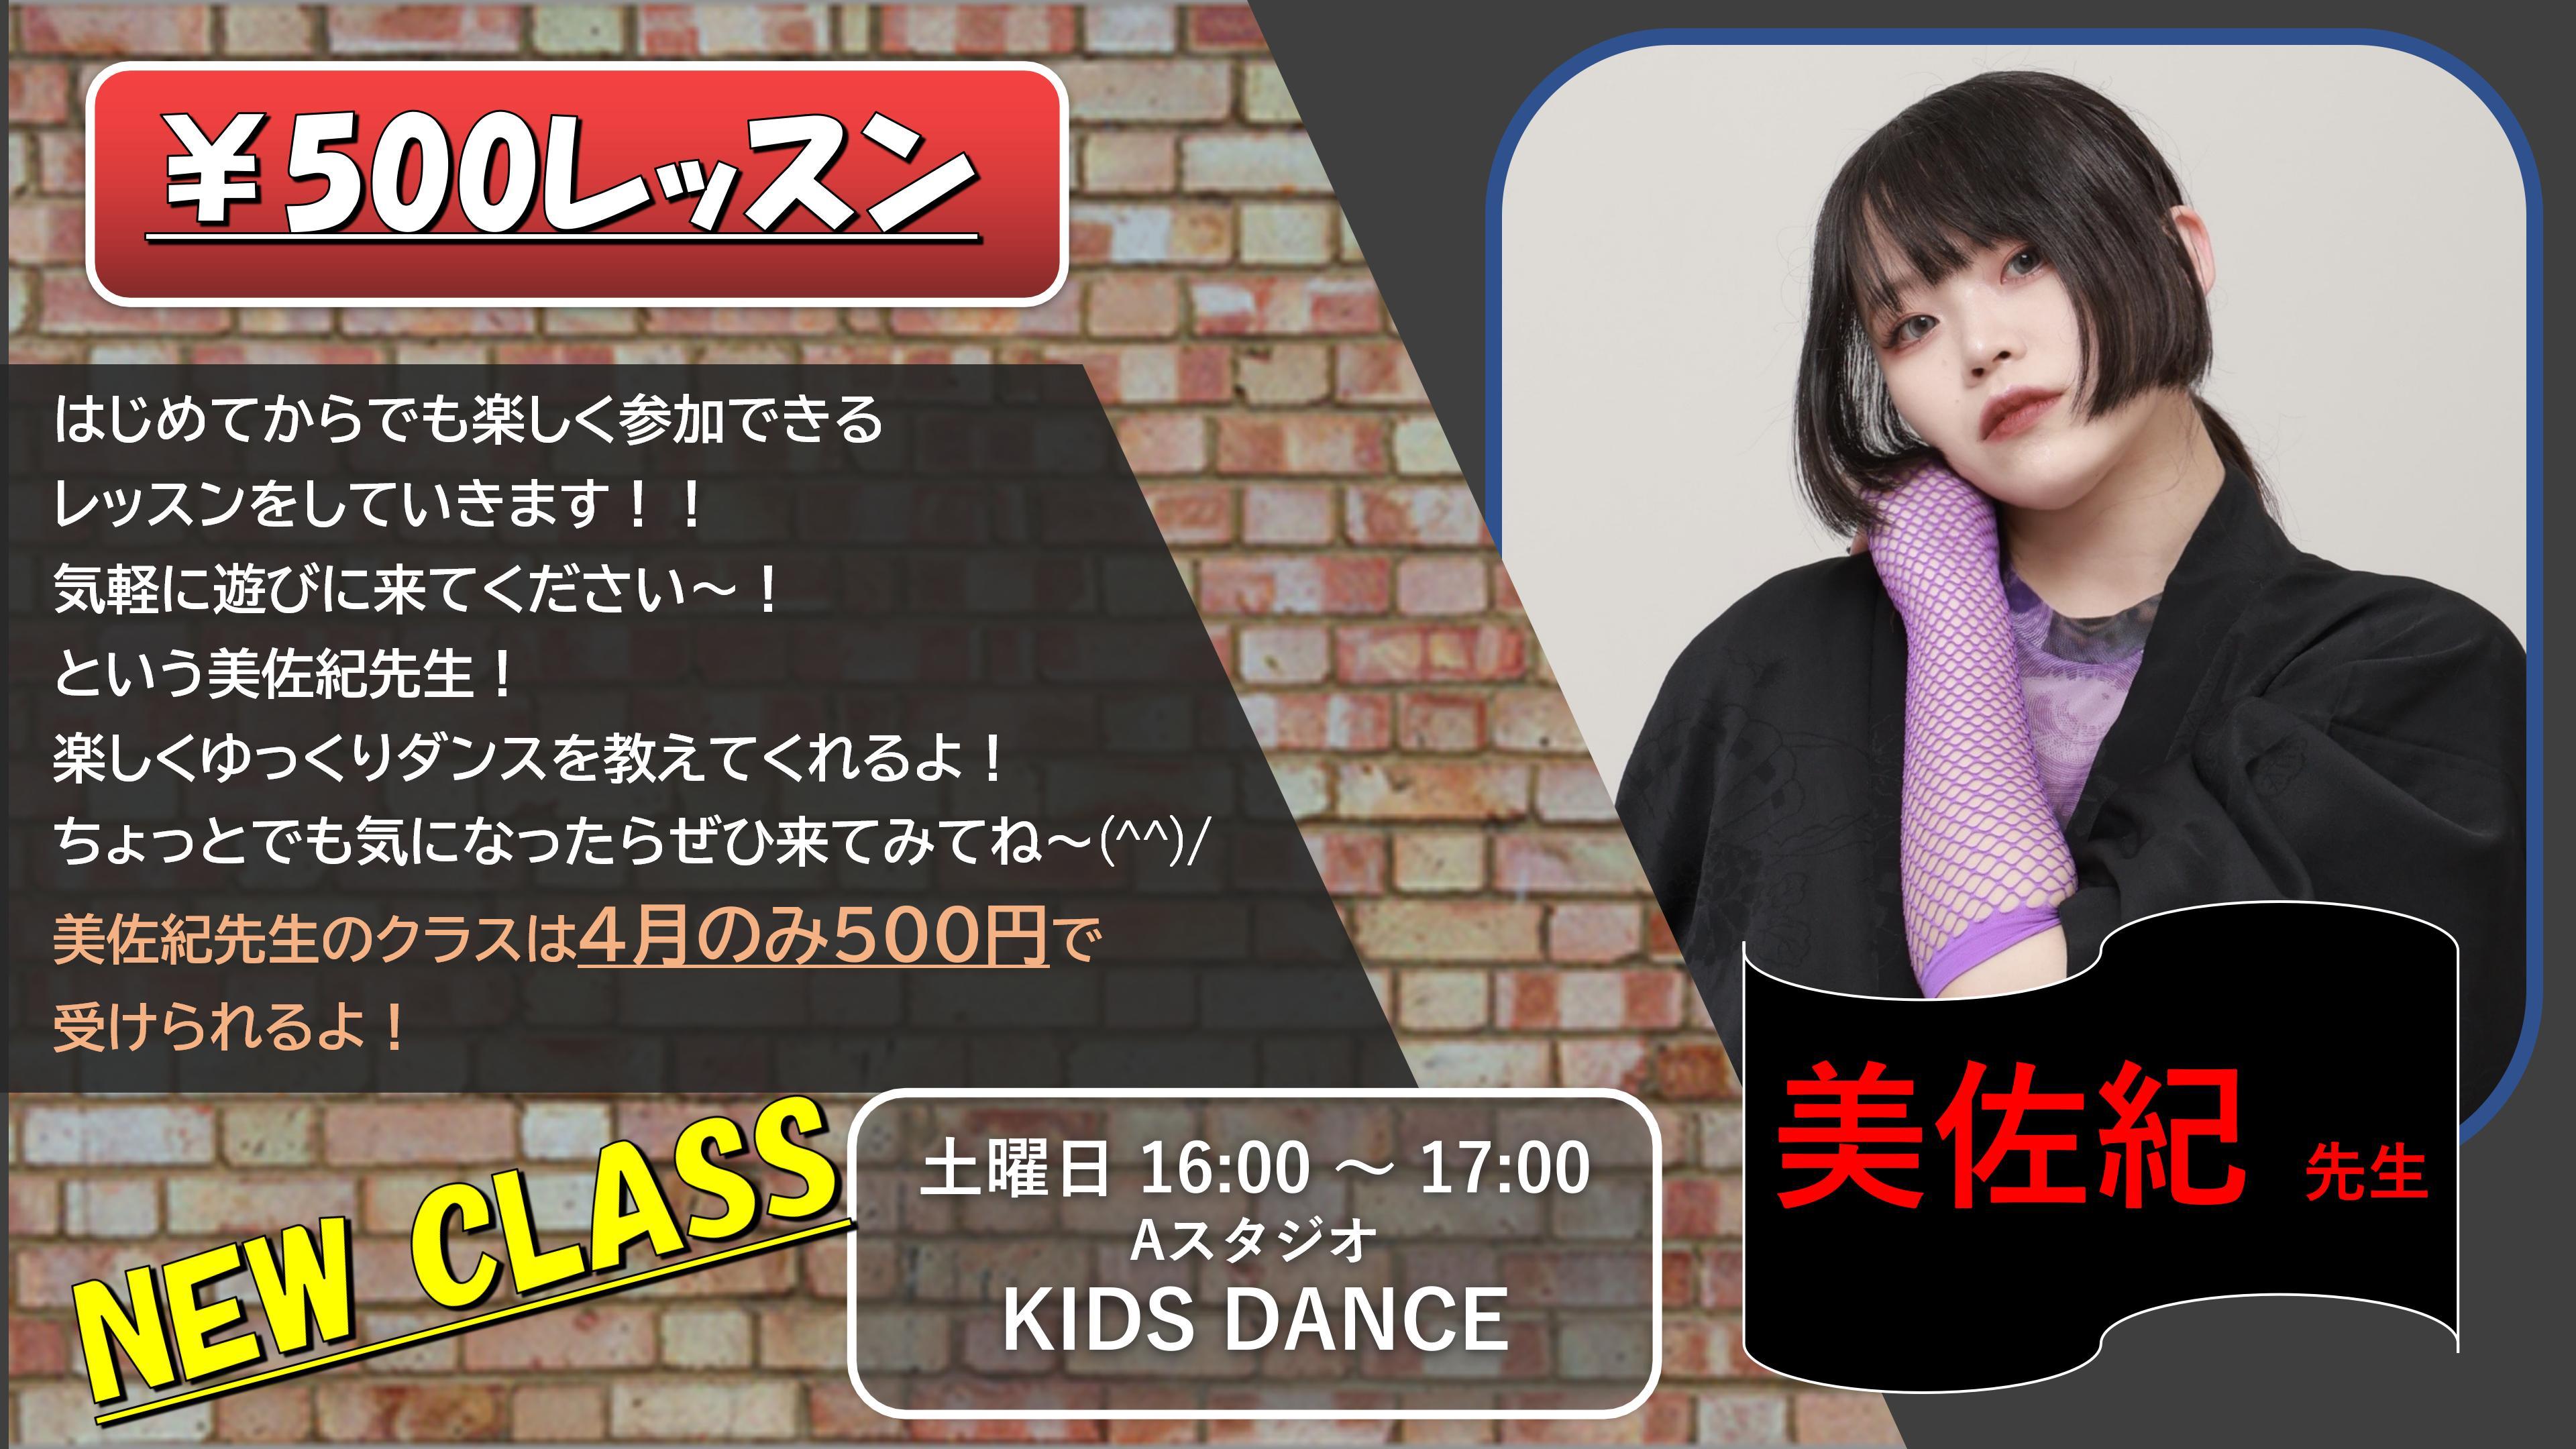 美佐紀 KIDS DANCE 24.4 01 0